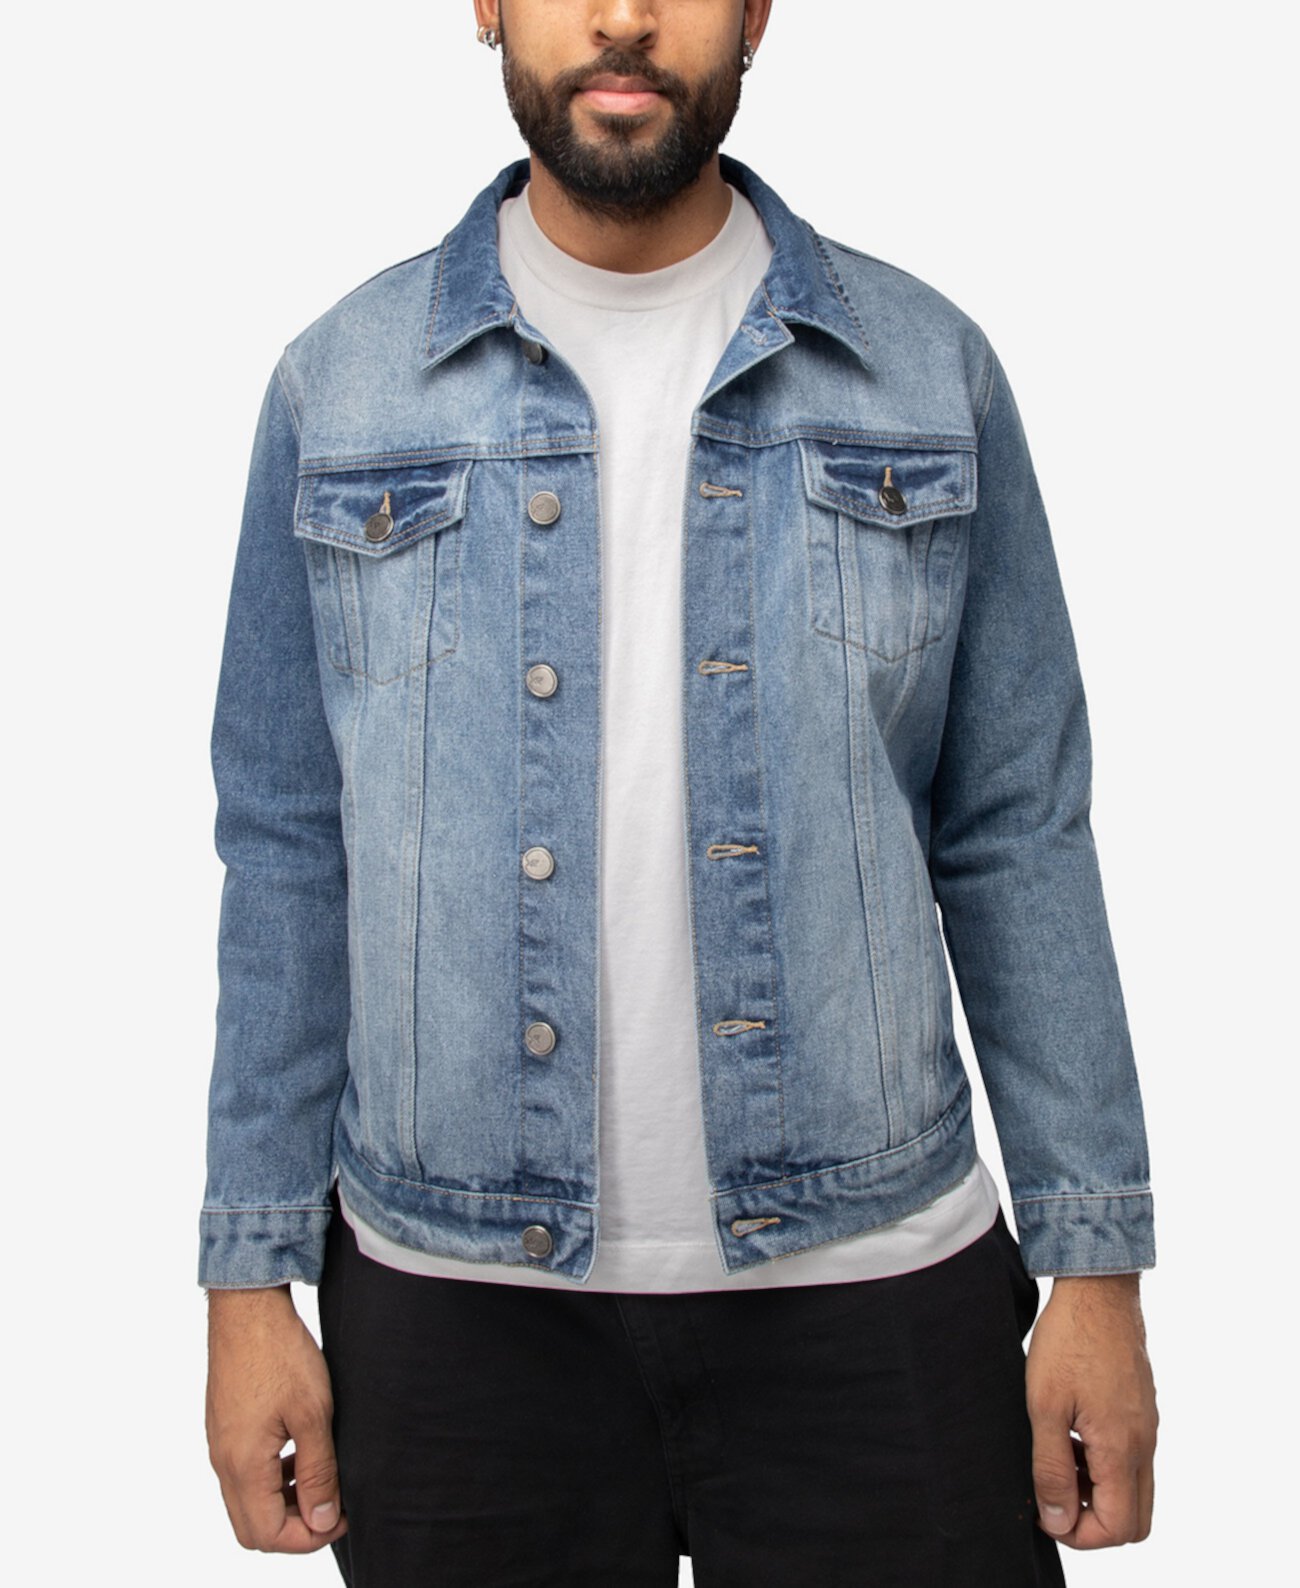 Мужская джинсовая куртка со стразами и графическим рисунком X-Ray